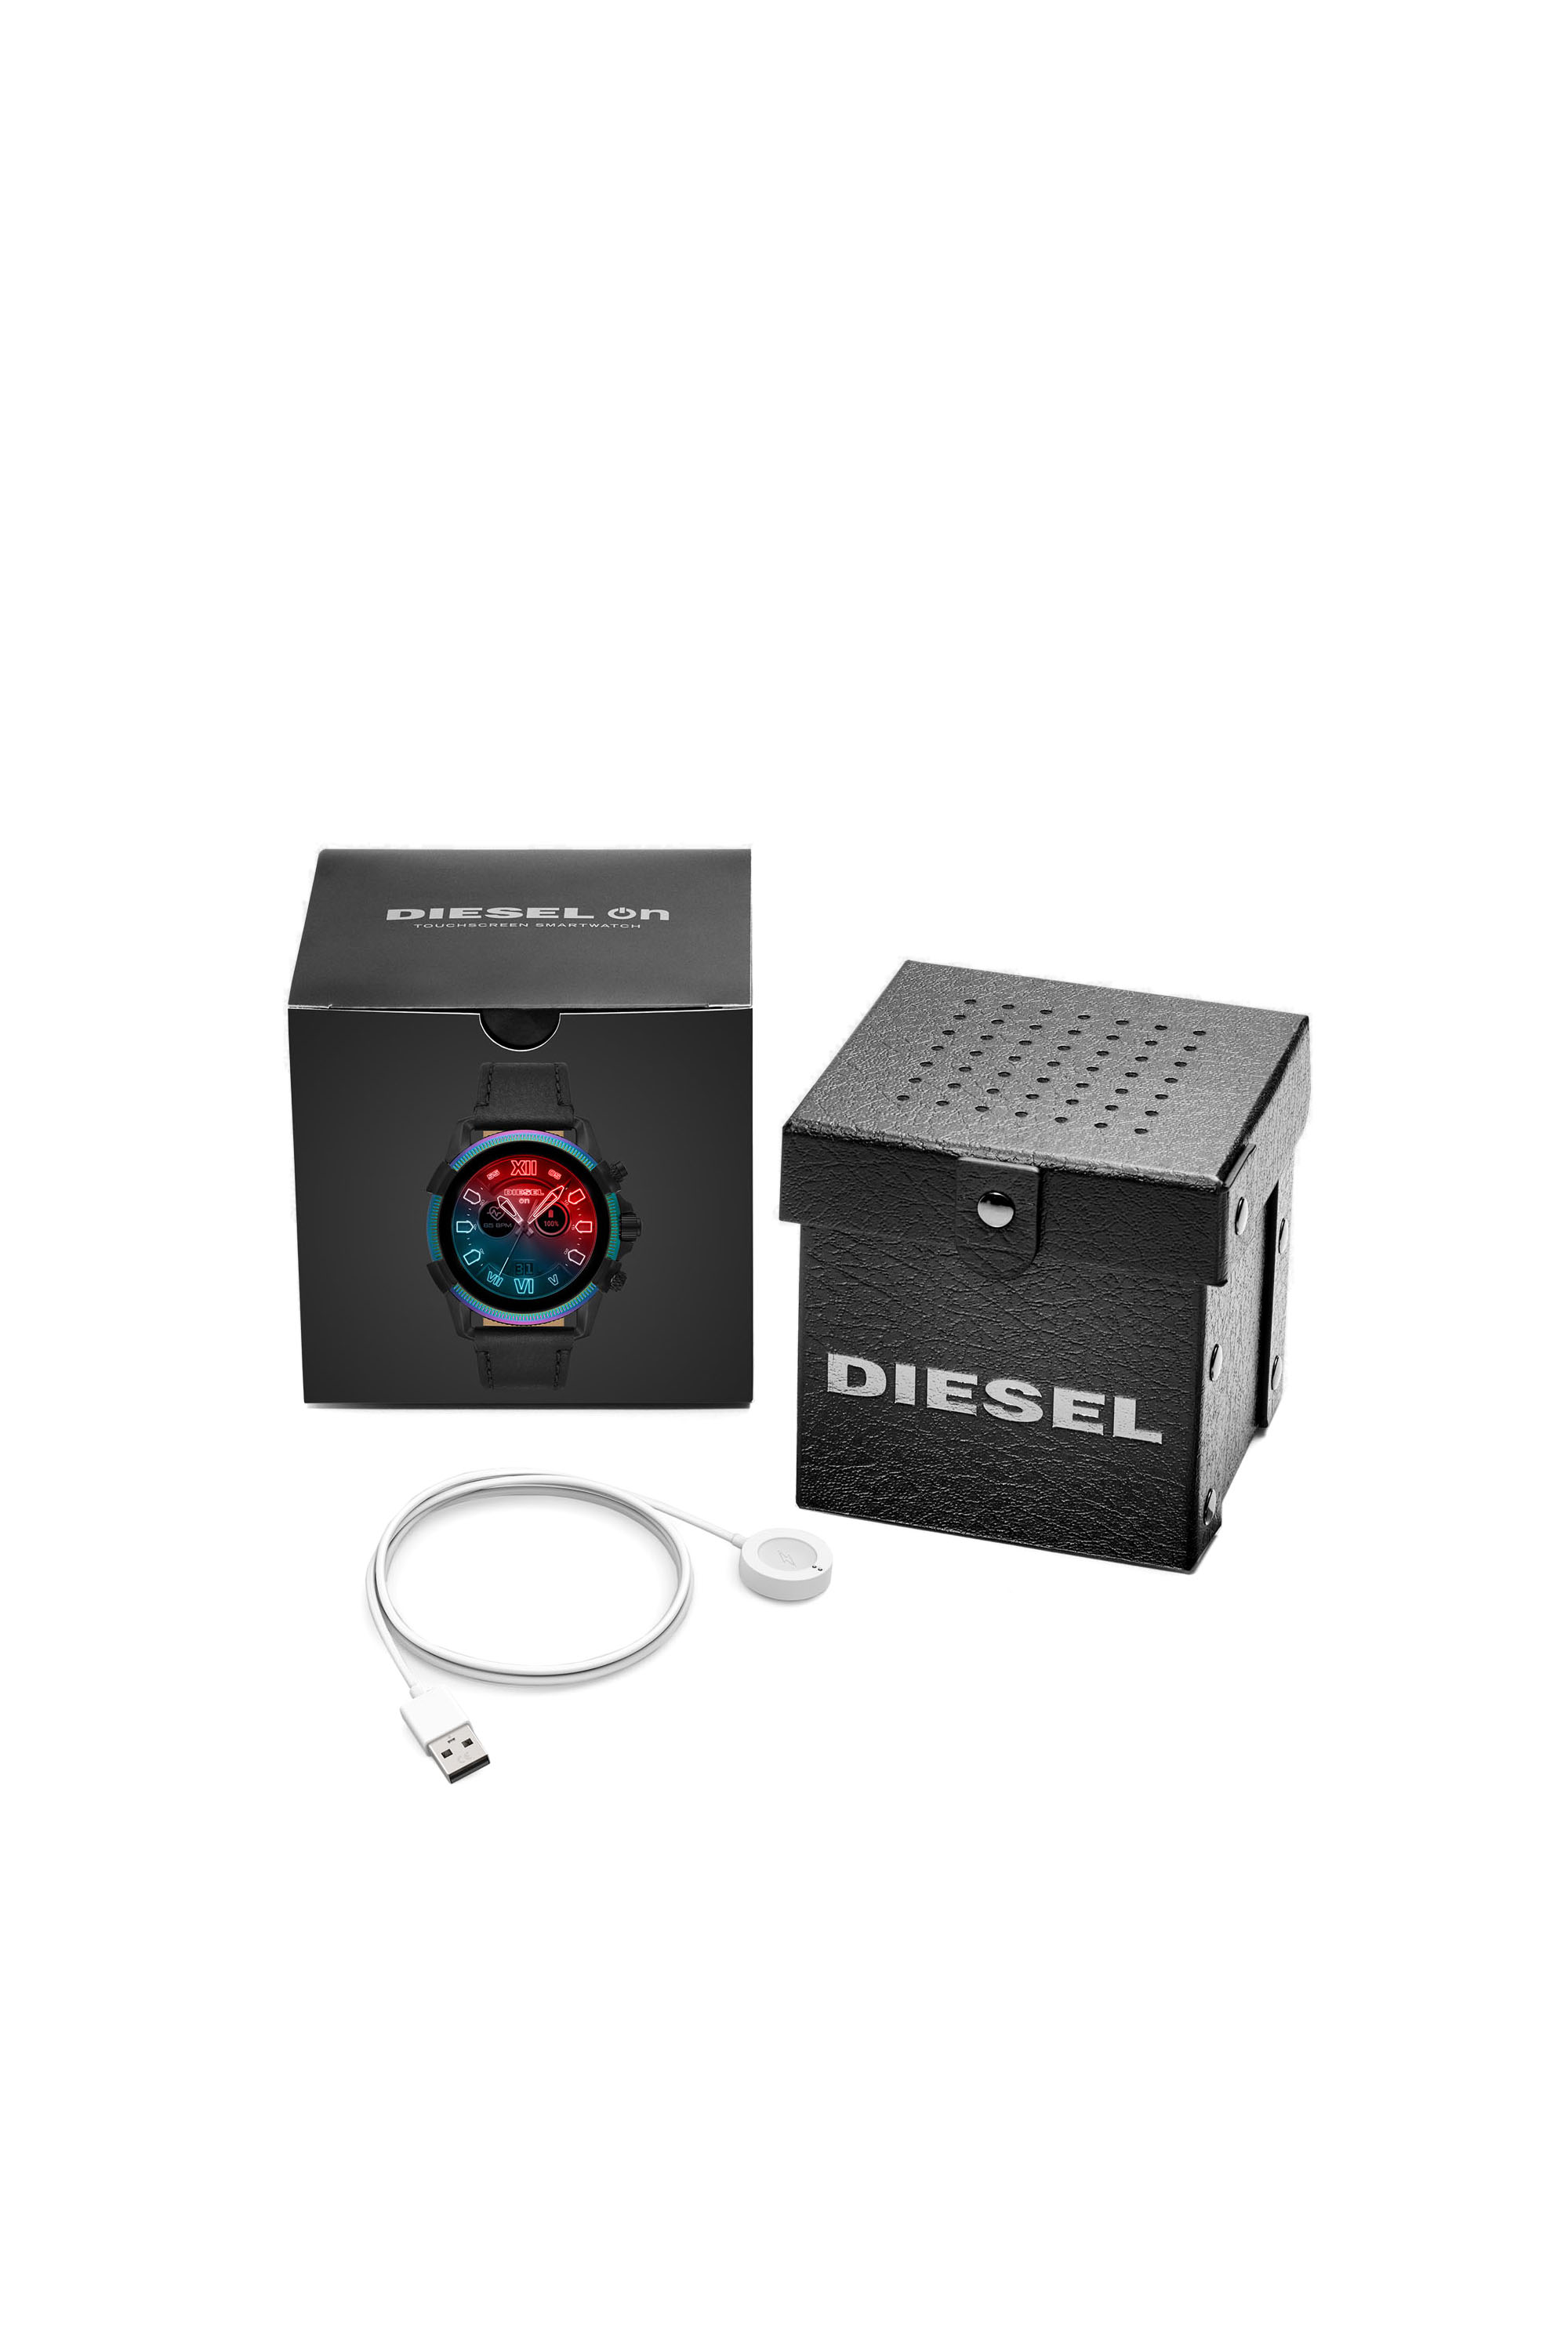 Diesel - DT2013, Black - Image 7